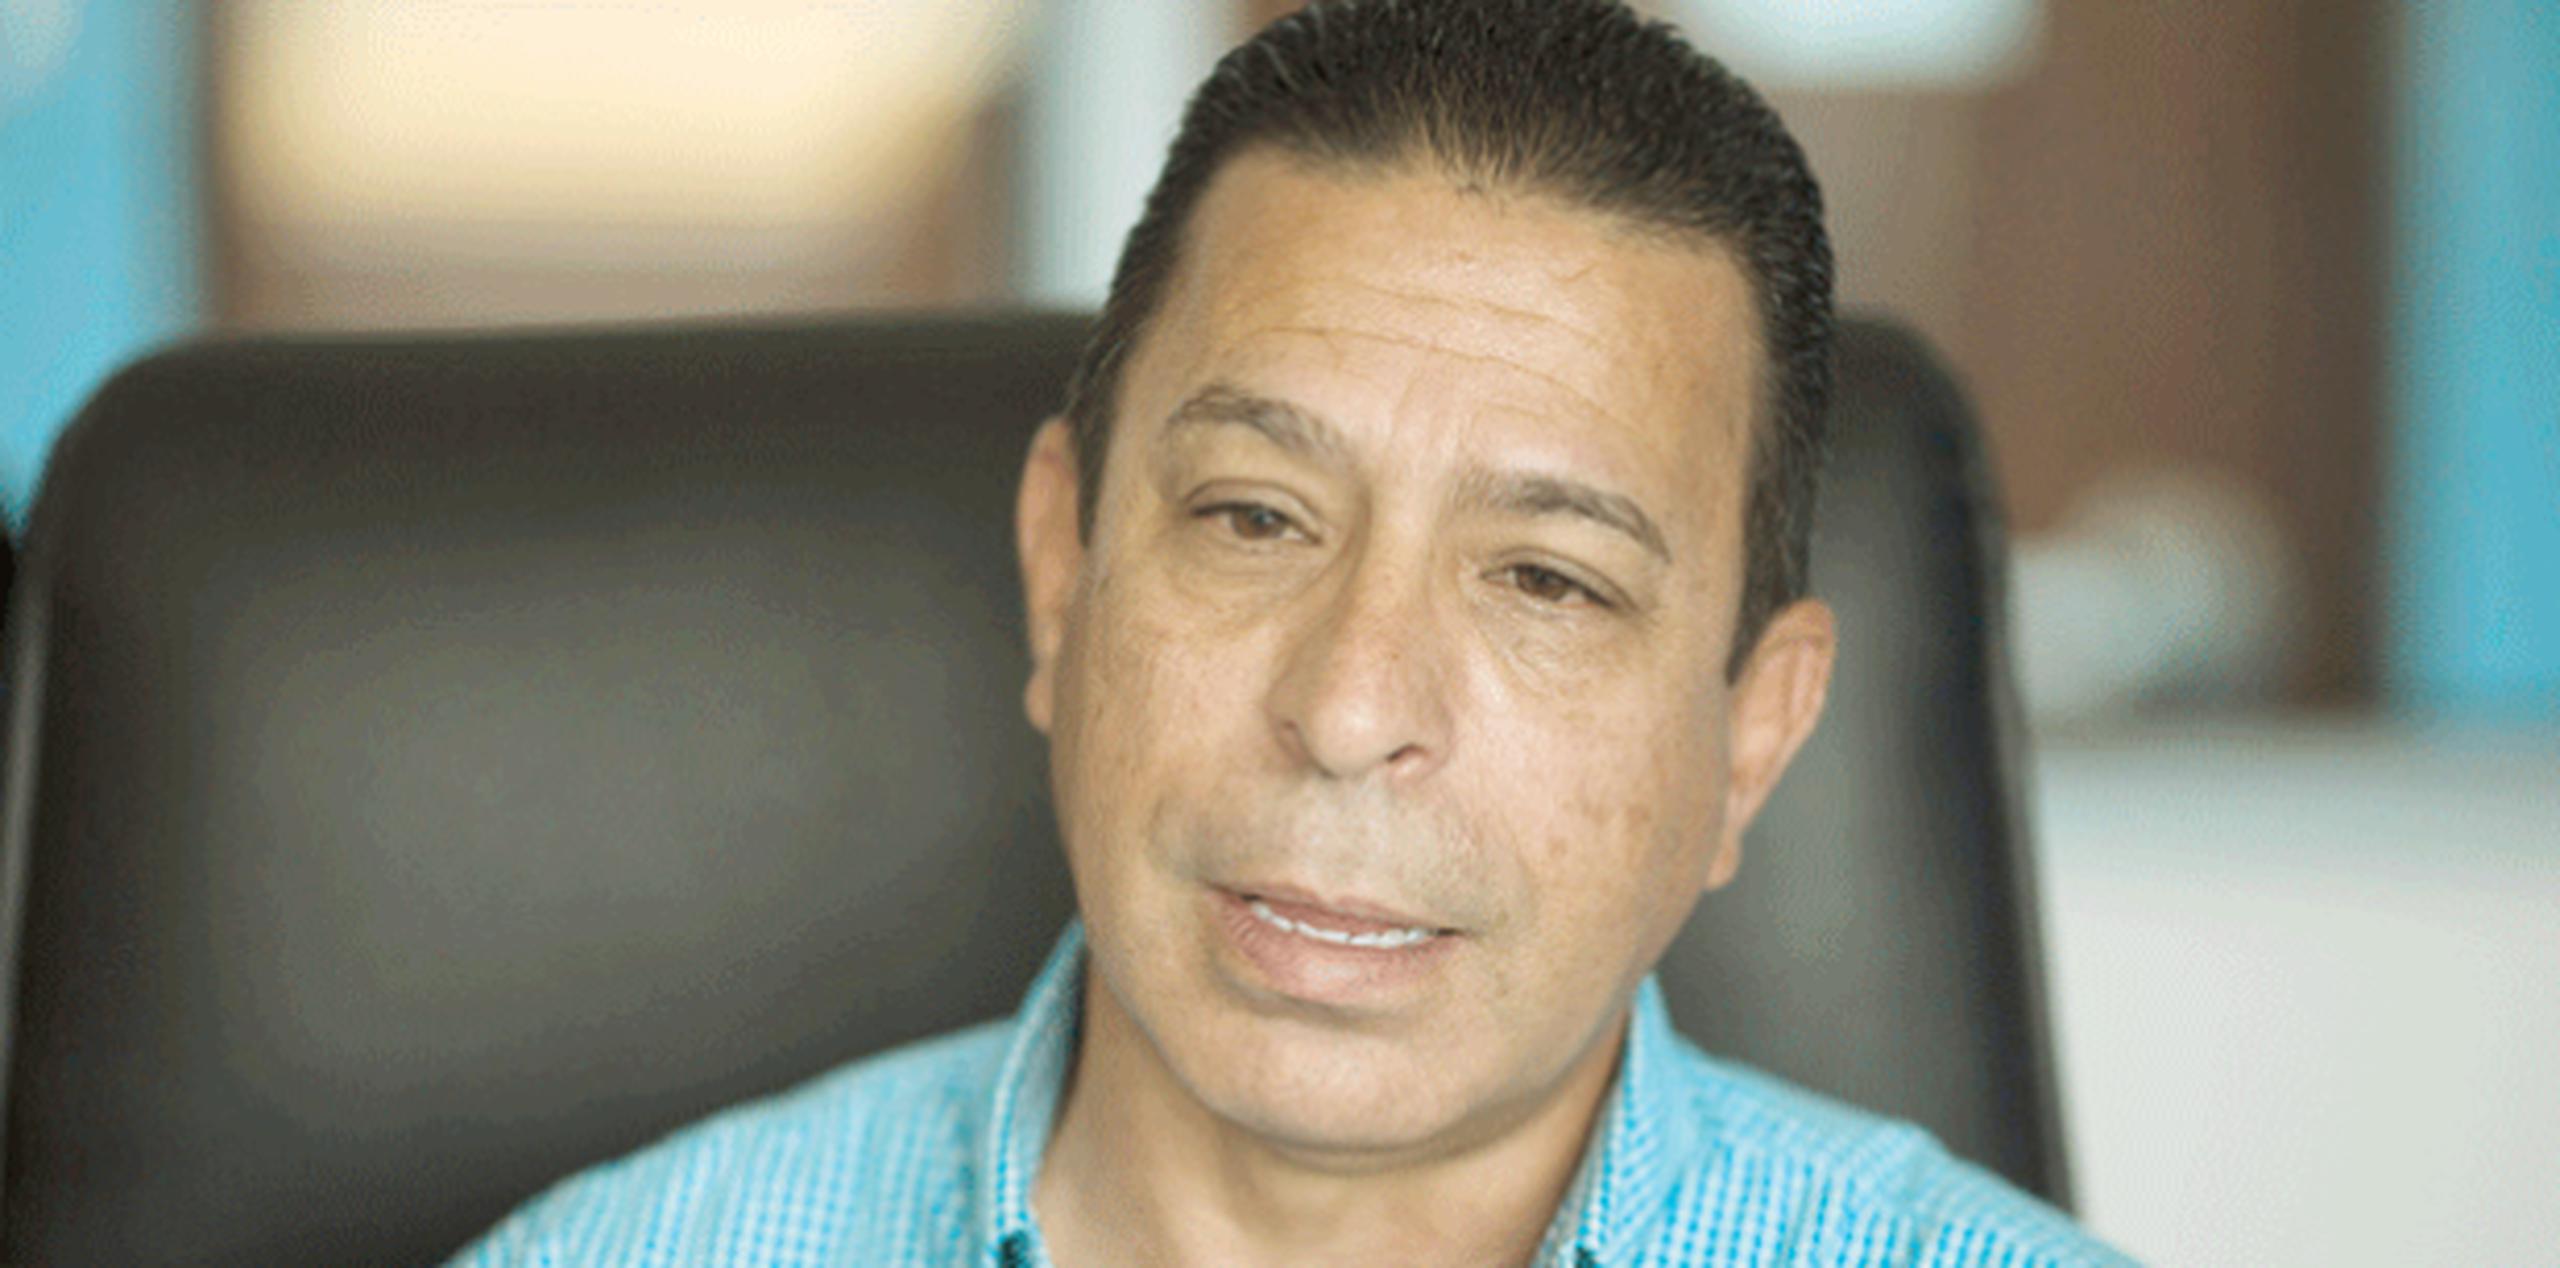 El alcalde sangermeño, Isidro Negrón, solicitó que se le suministren, de formar urgente, sueros de solución salina para los pacientes en el hospital. (Archivo)